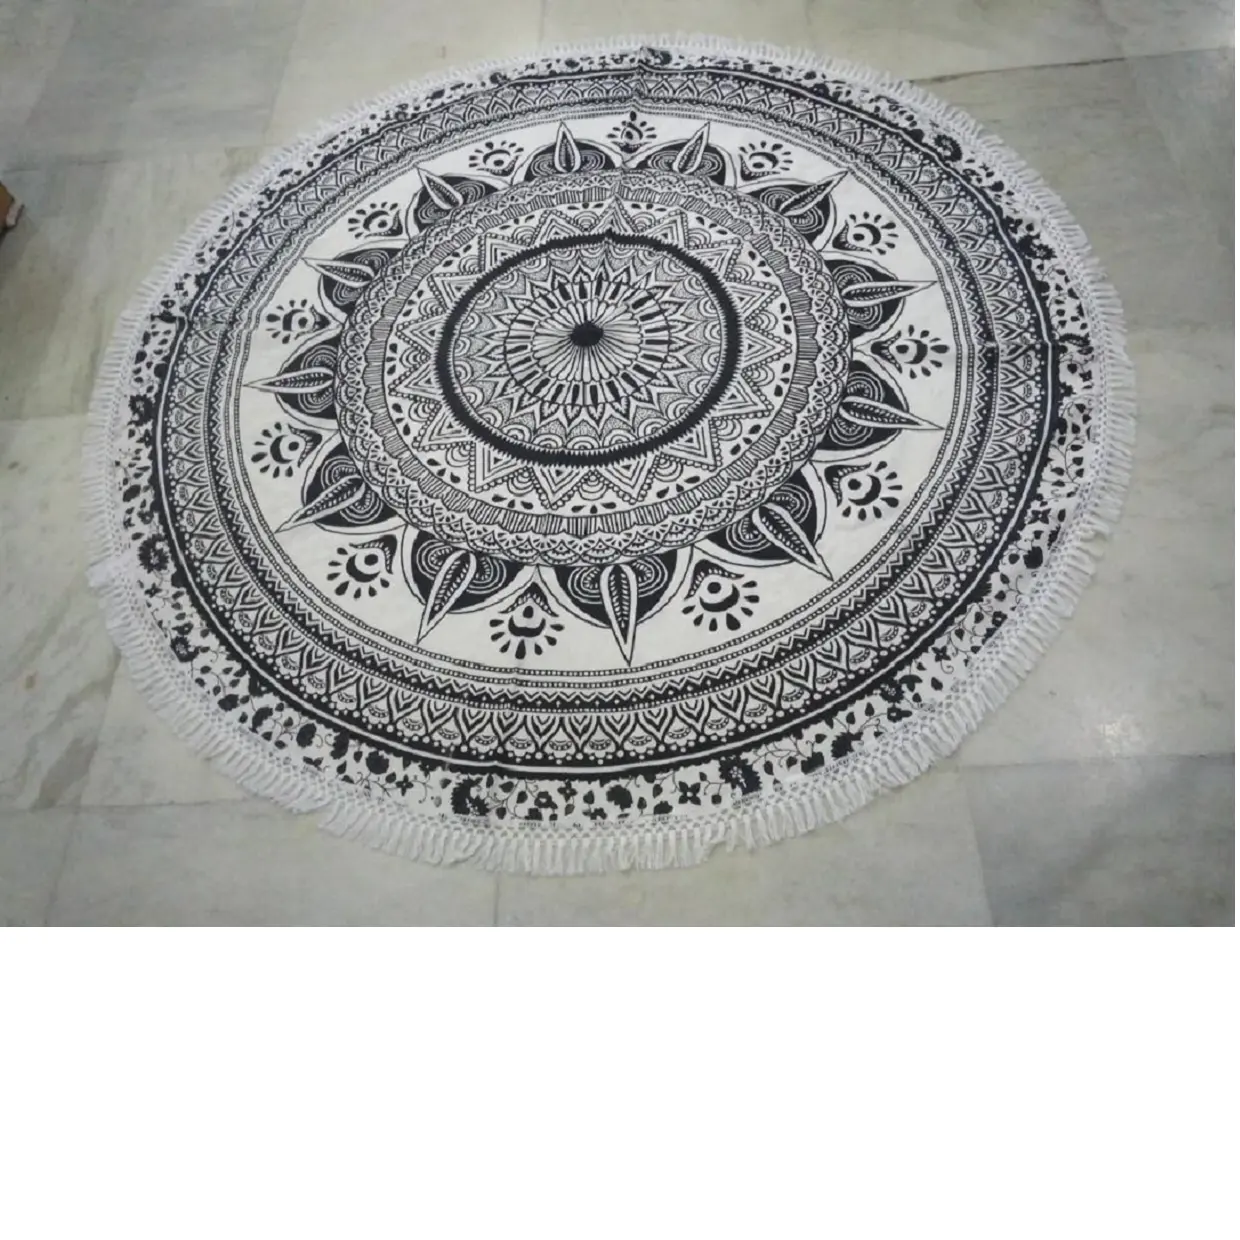 Bodenbeläge mit Schwarzweiss-Baumwoll druck und Mandala-Motiven, ideal für Yoga-Läden zum Wiederverkauf